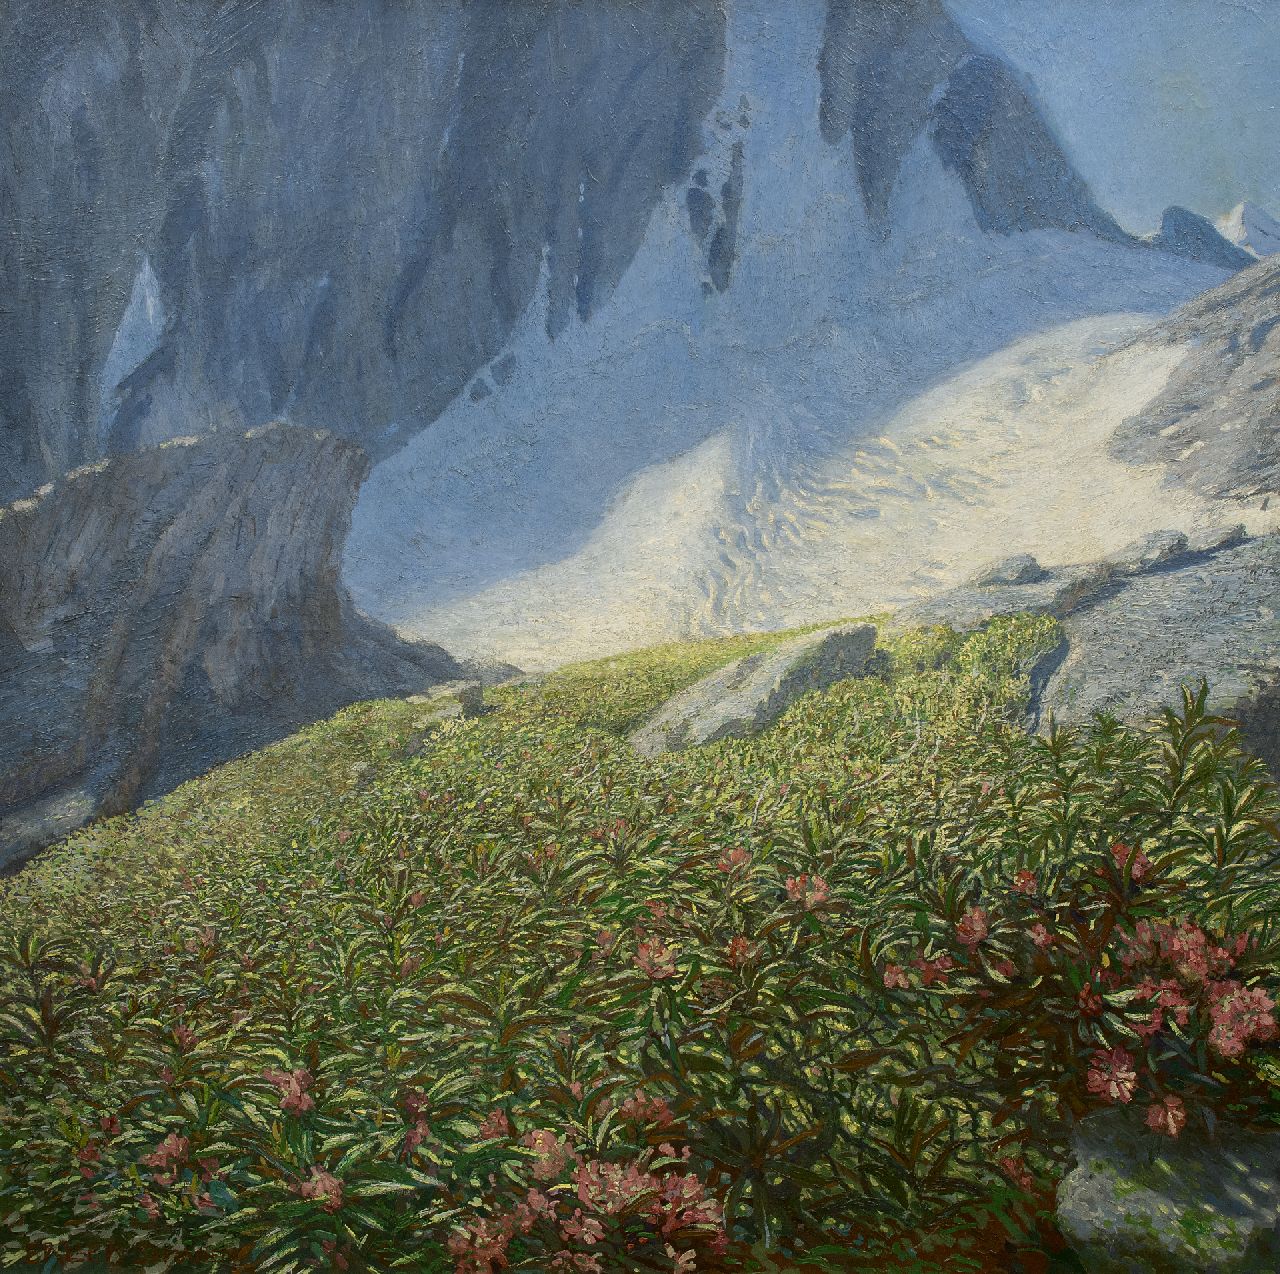 Erich Erler-Samaden | Bloemenveld bij een gletsjer, olieverf op doek, 120,0 x 120,0 cm, gesigneerd l.o.